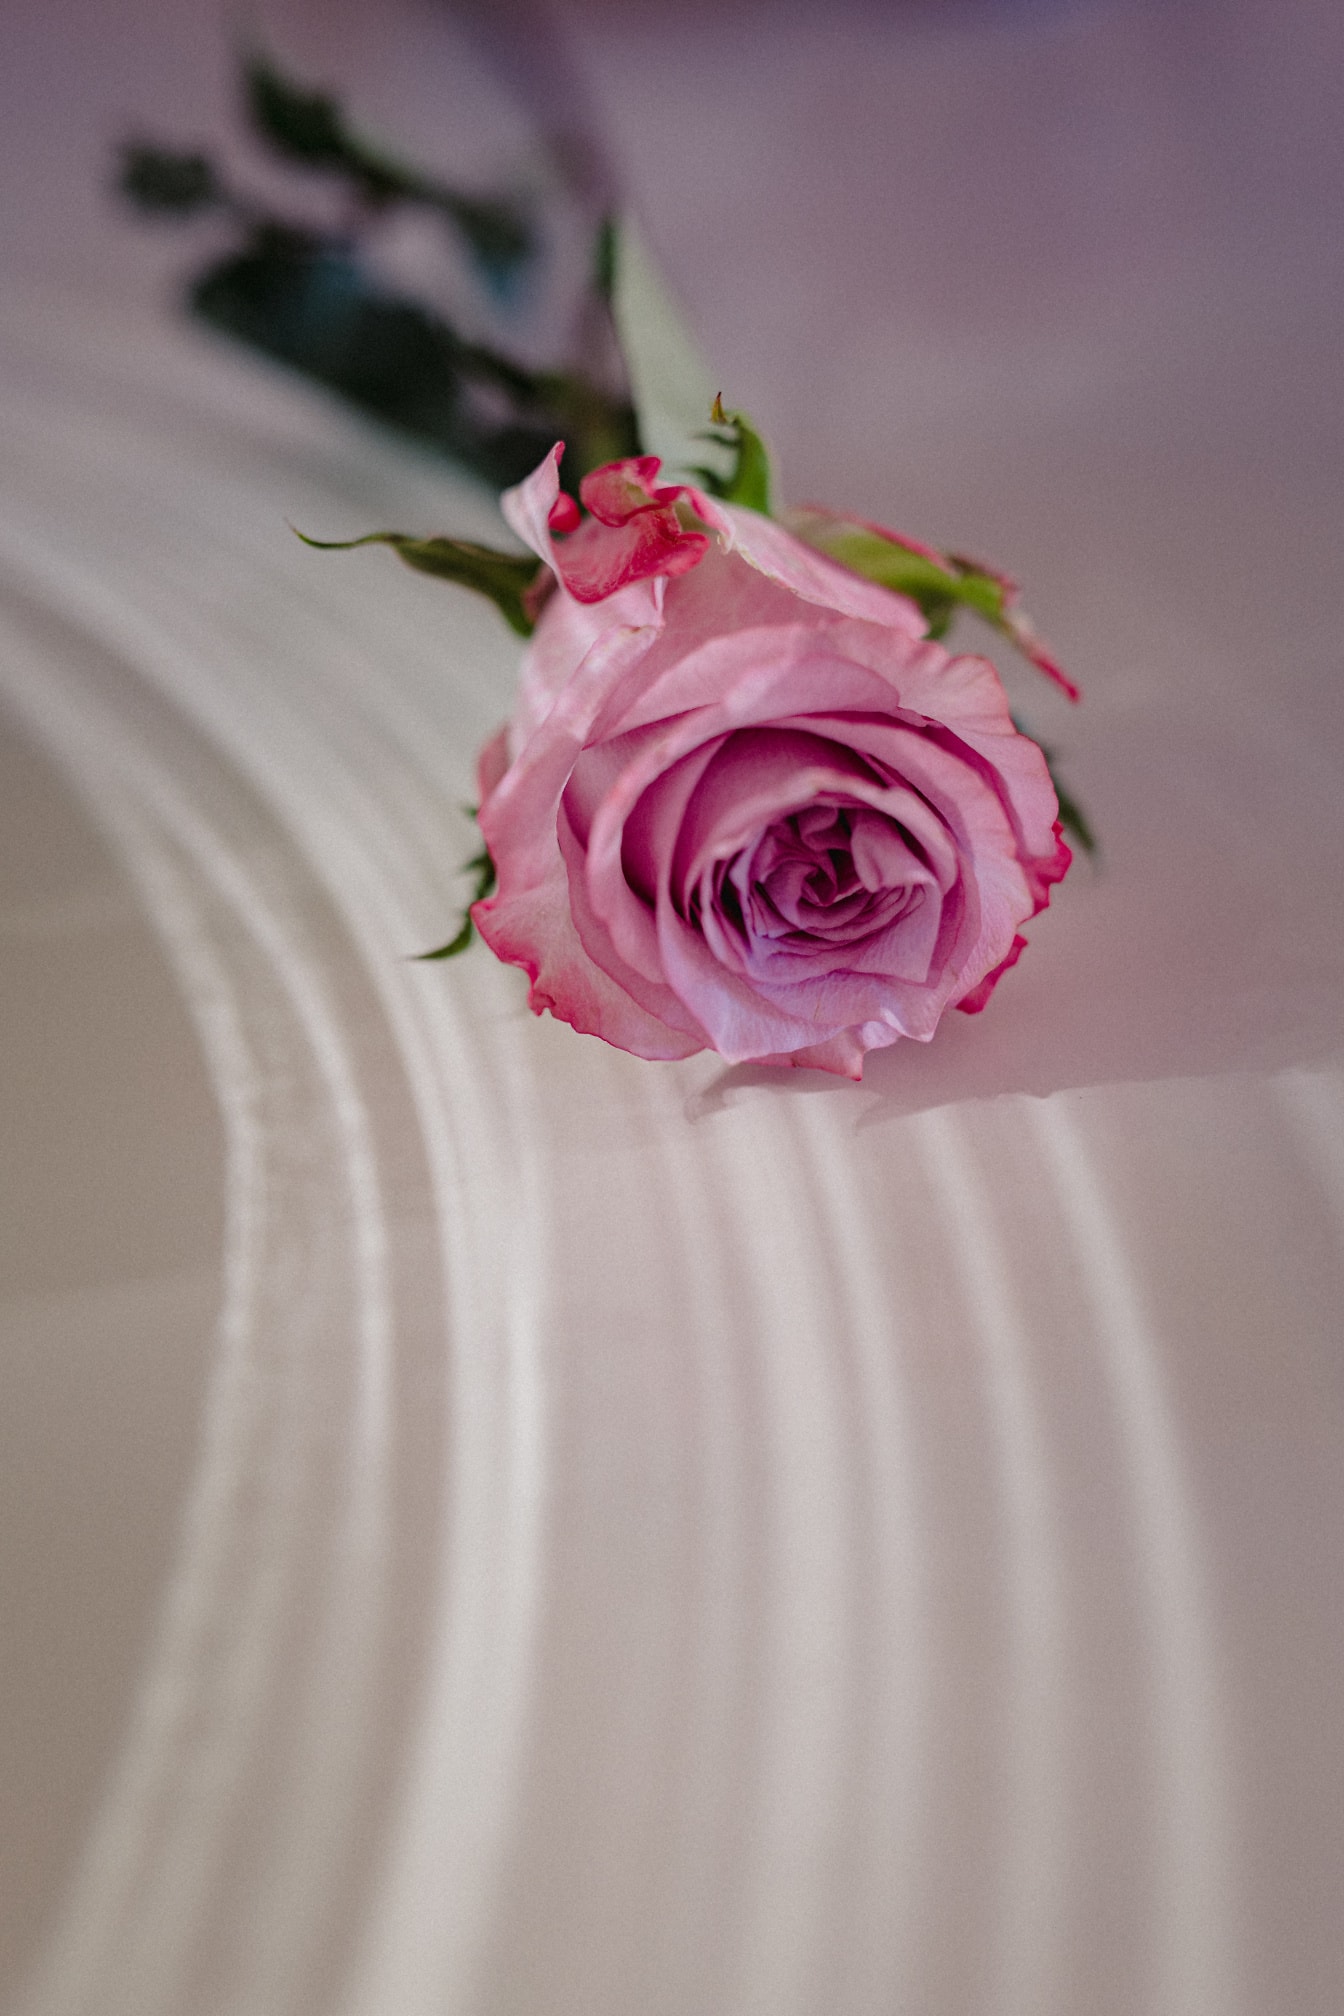 粉红色玫瑰礼物在白色表面上的情人节